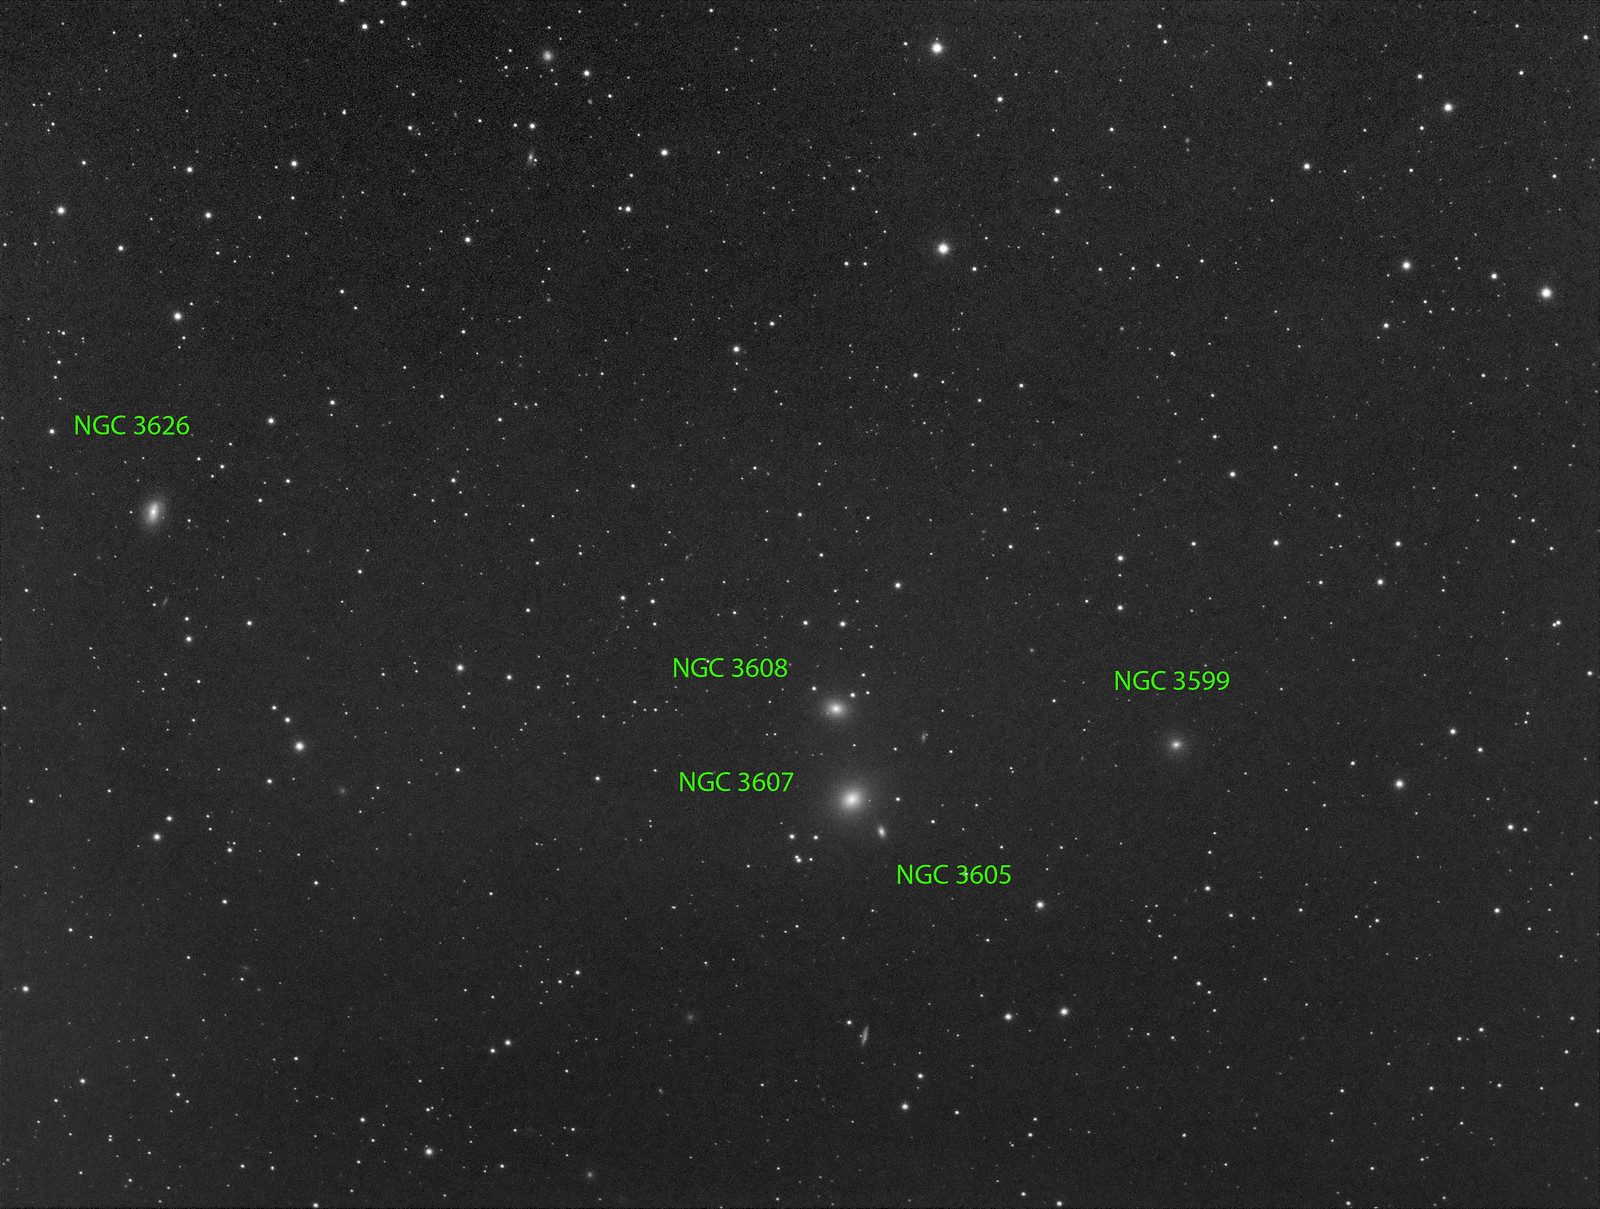 040 - NGC 3626 - Luminance